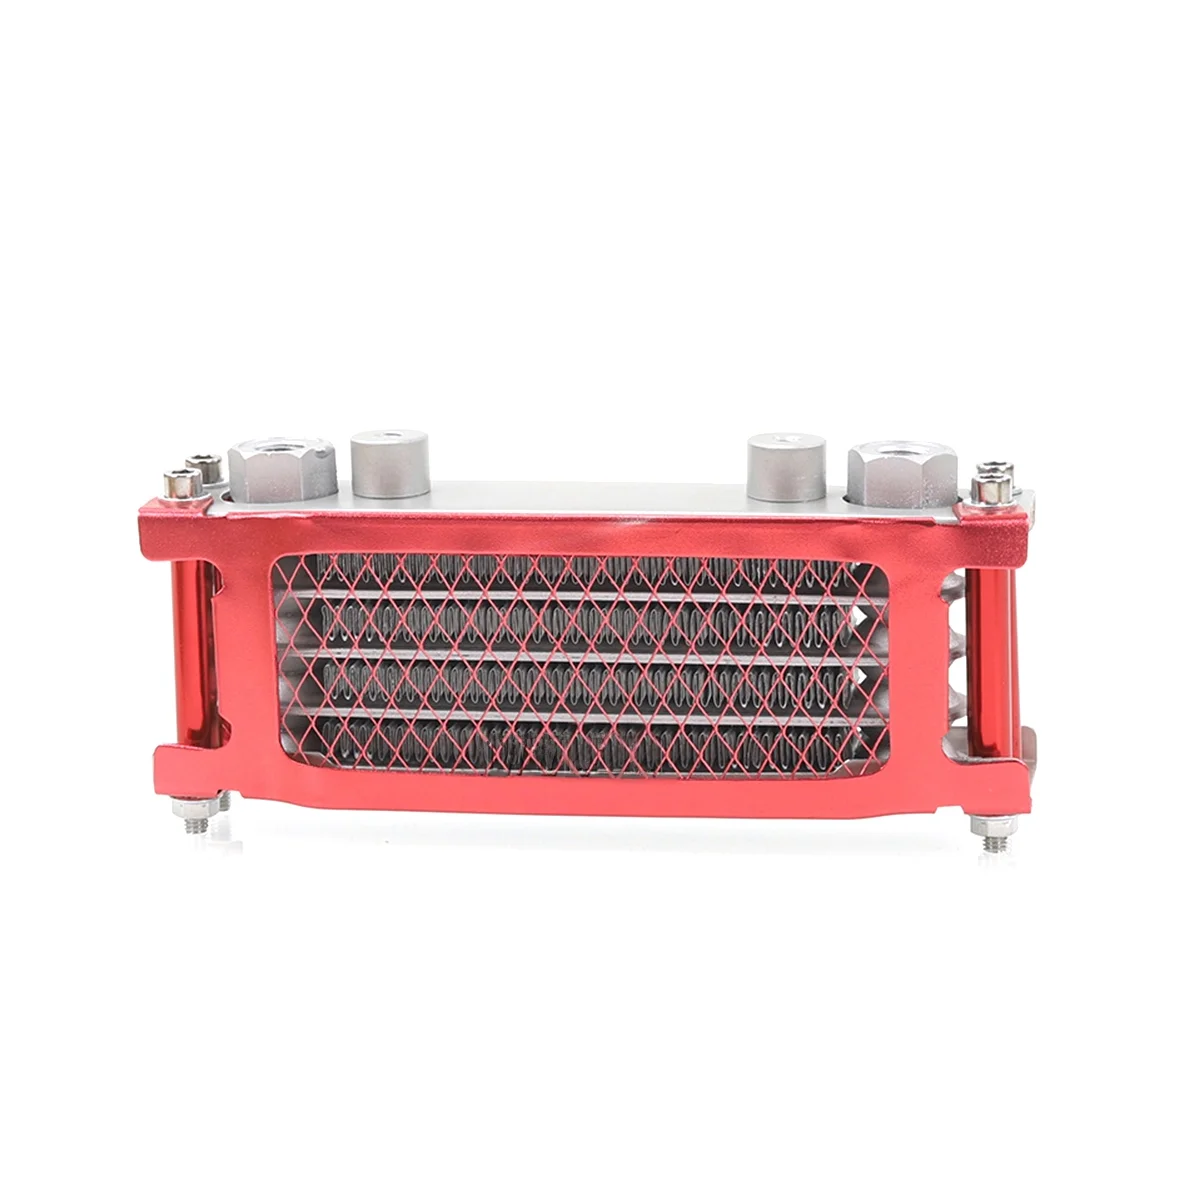 

Интерфейсный радиатор M10, масляный радиатор, алюминиевая система охлаждения для мотоцикла 50-160 куб. См, красного цвета